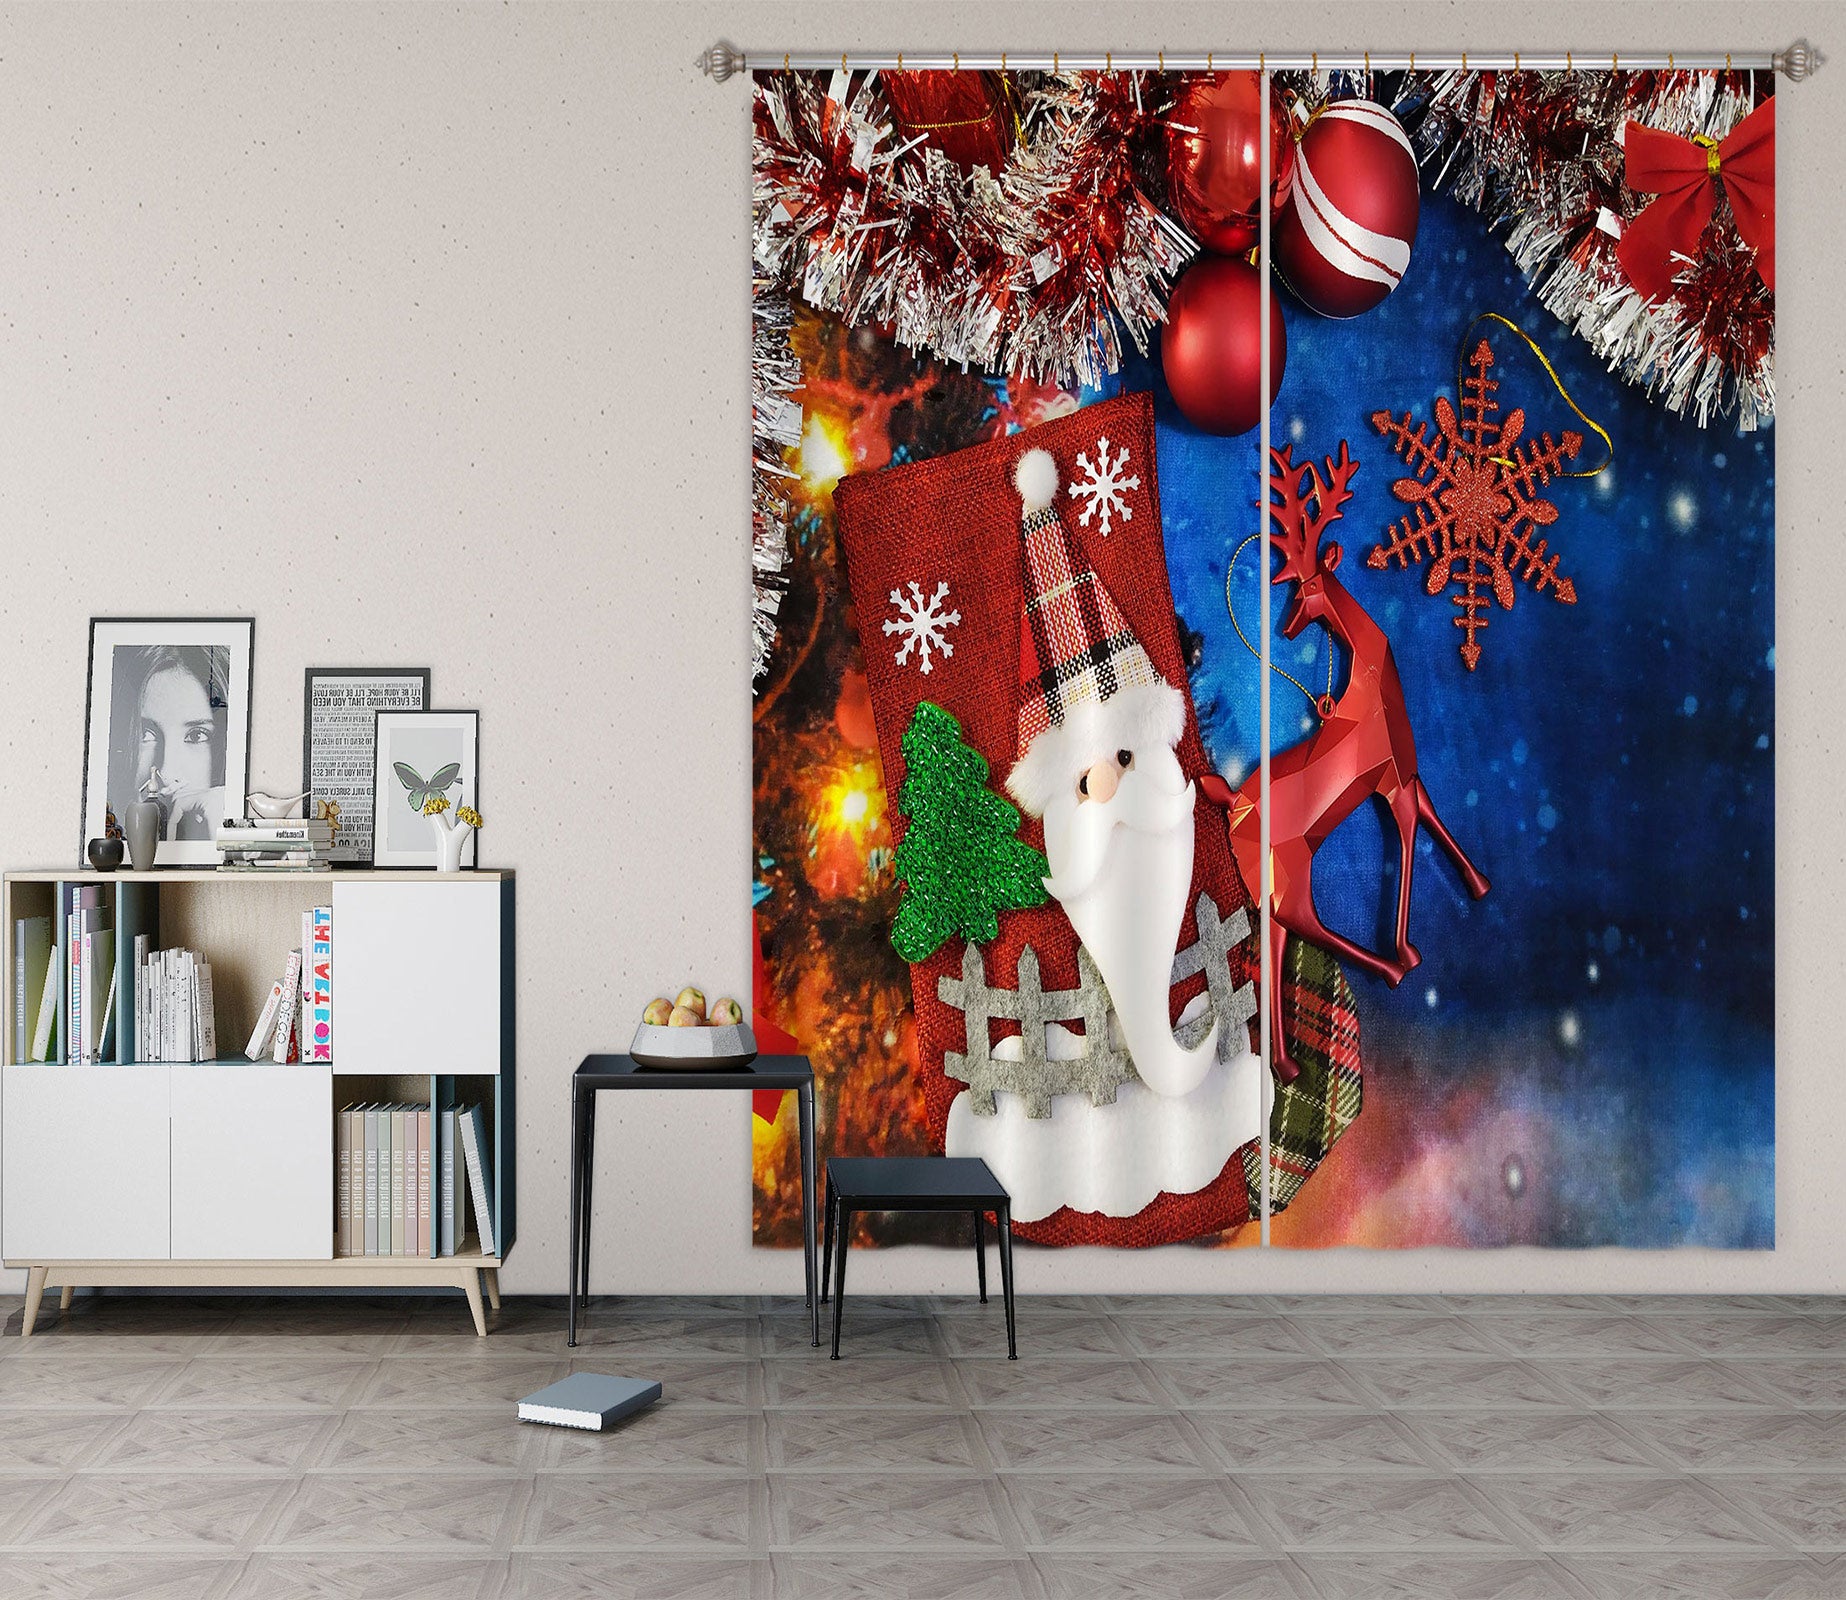 3D Santa Claus 53150 Christmas Curtains Drapes Xmas